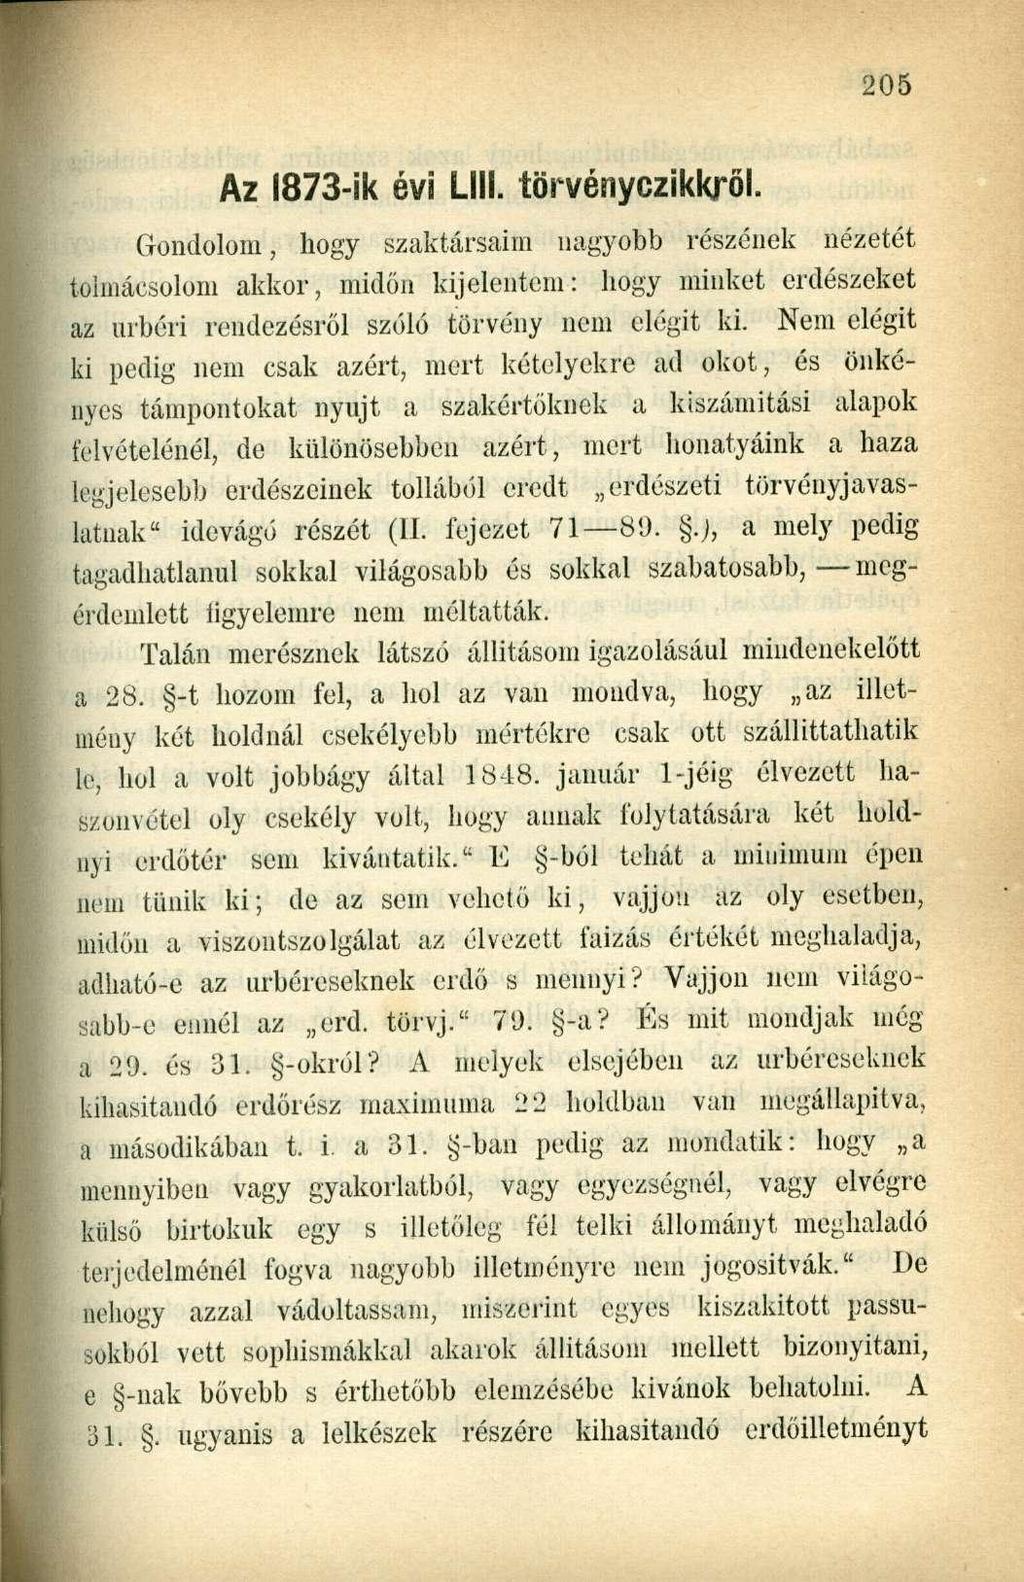 Az 1873-ik évi Lili. törvényczikkról.